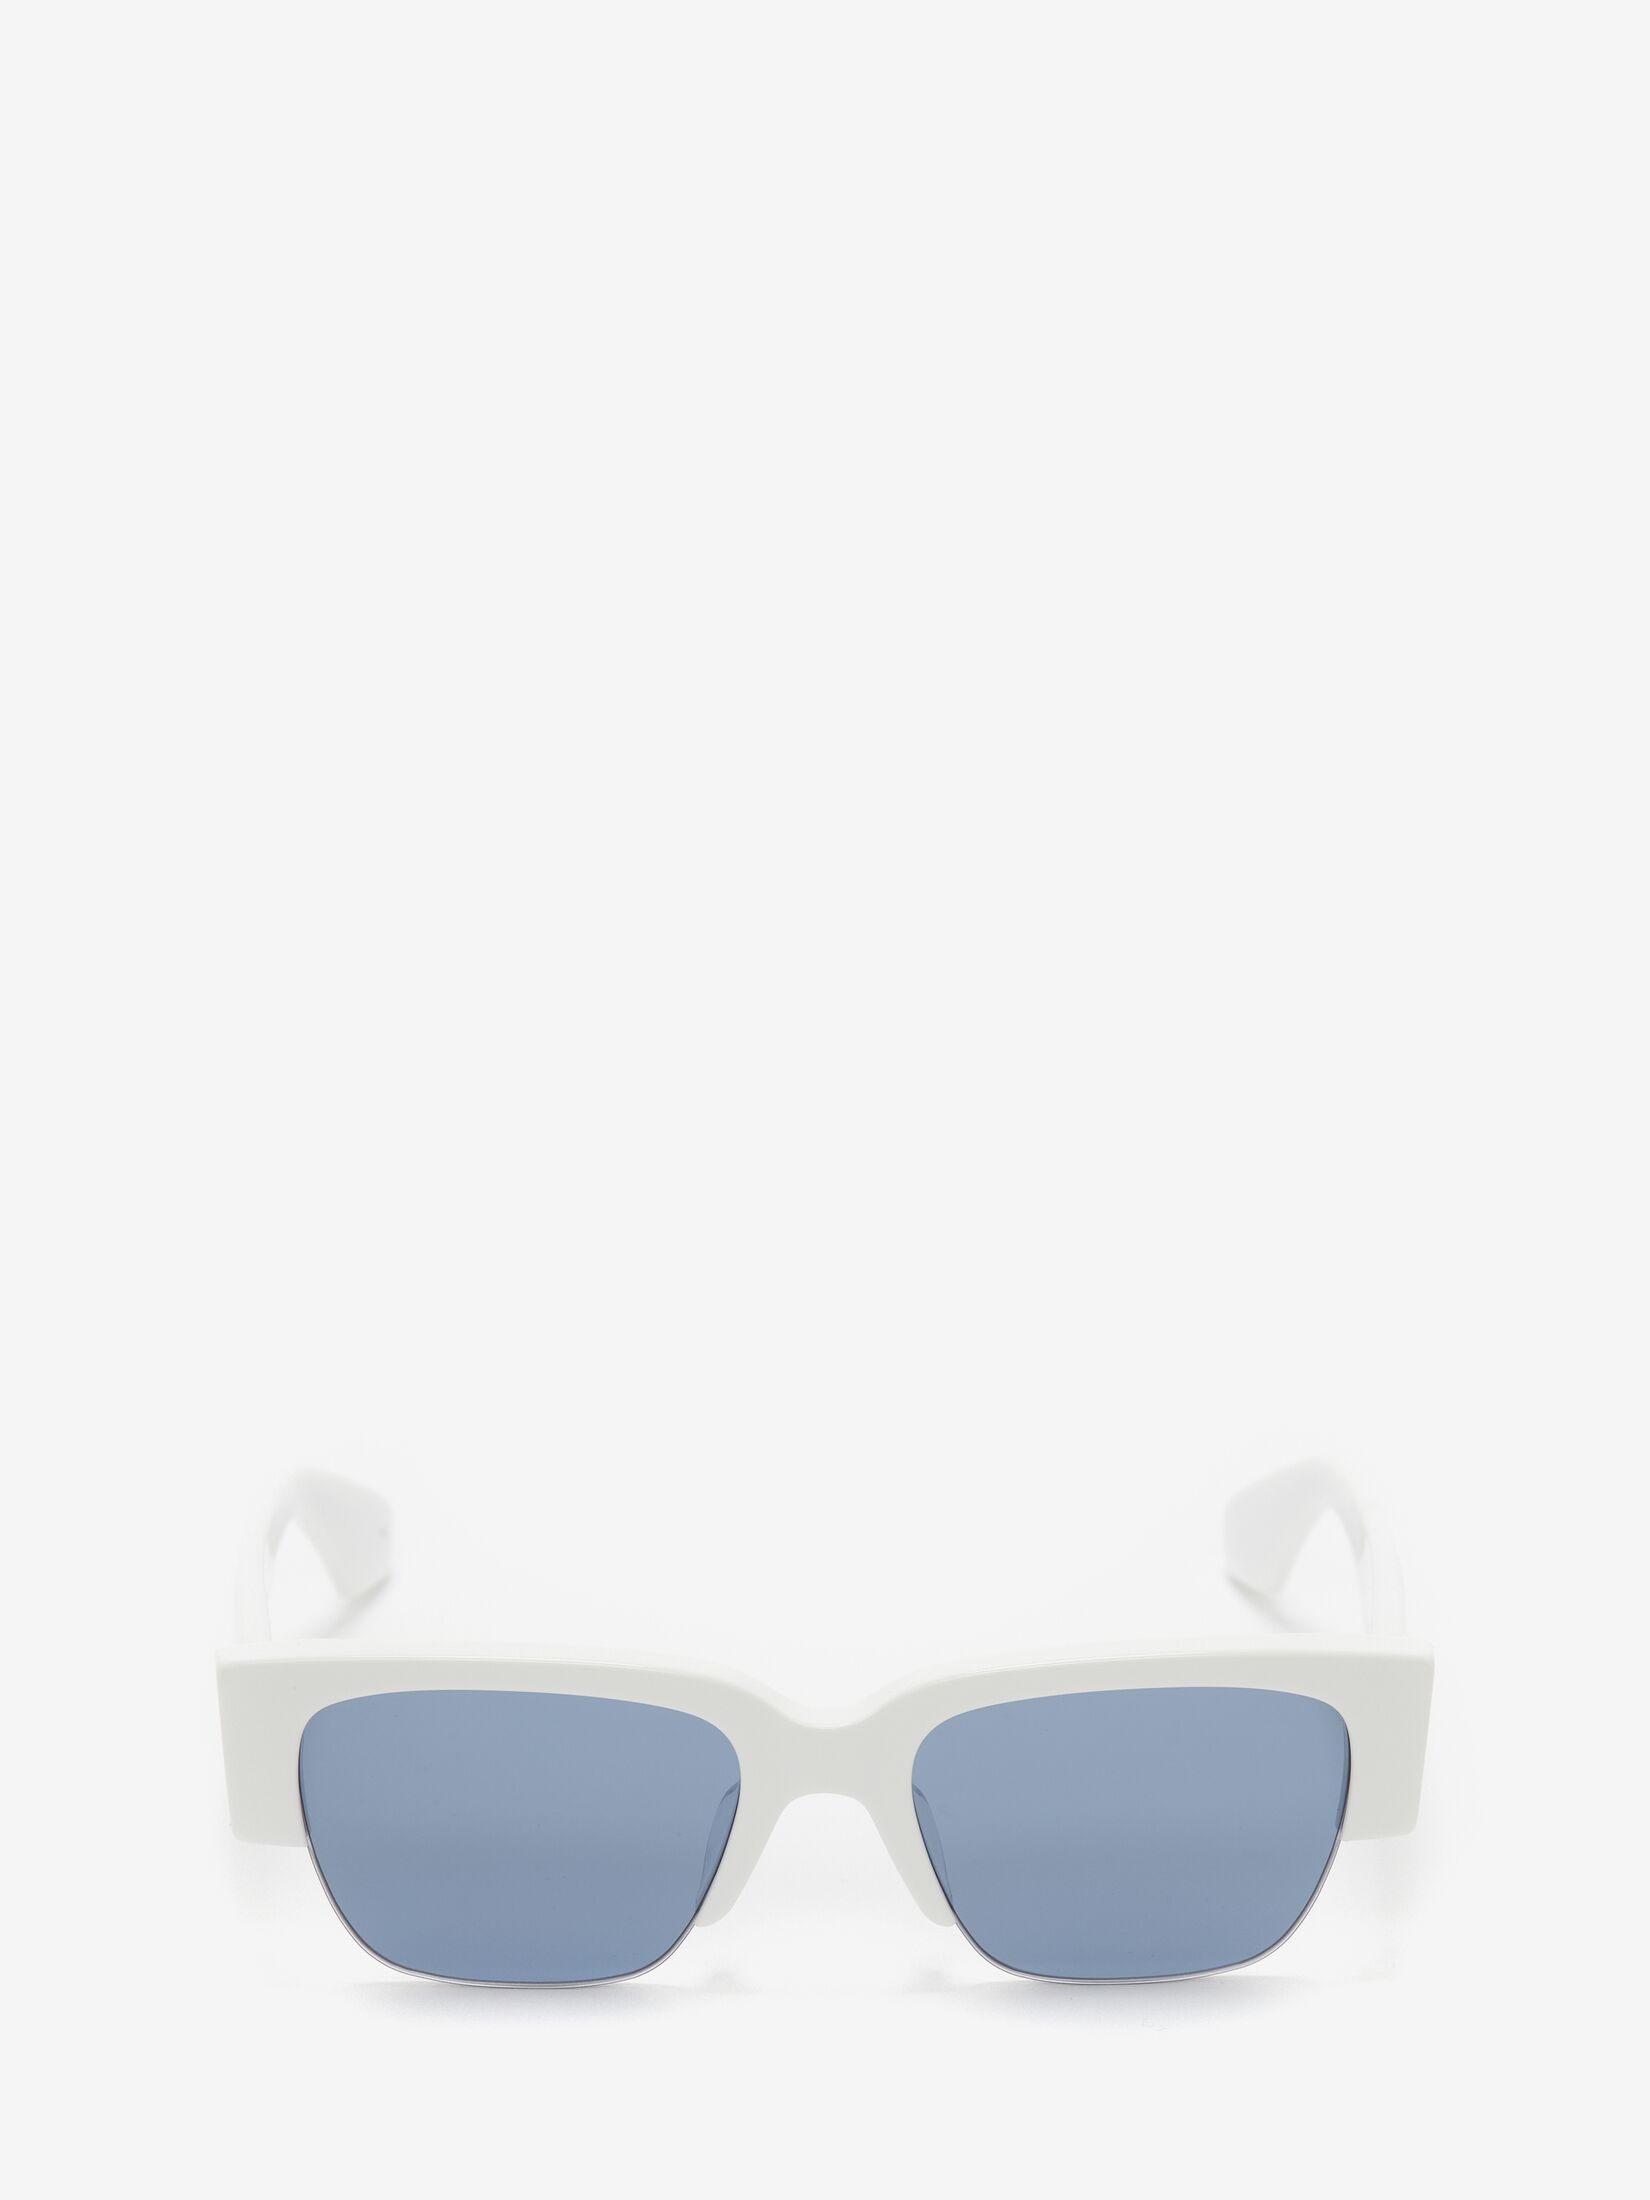 Update 121+ white border sunglasses super hot